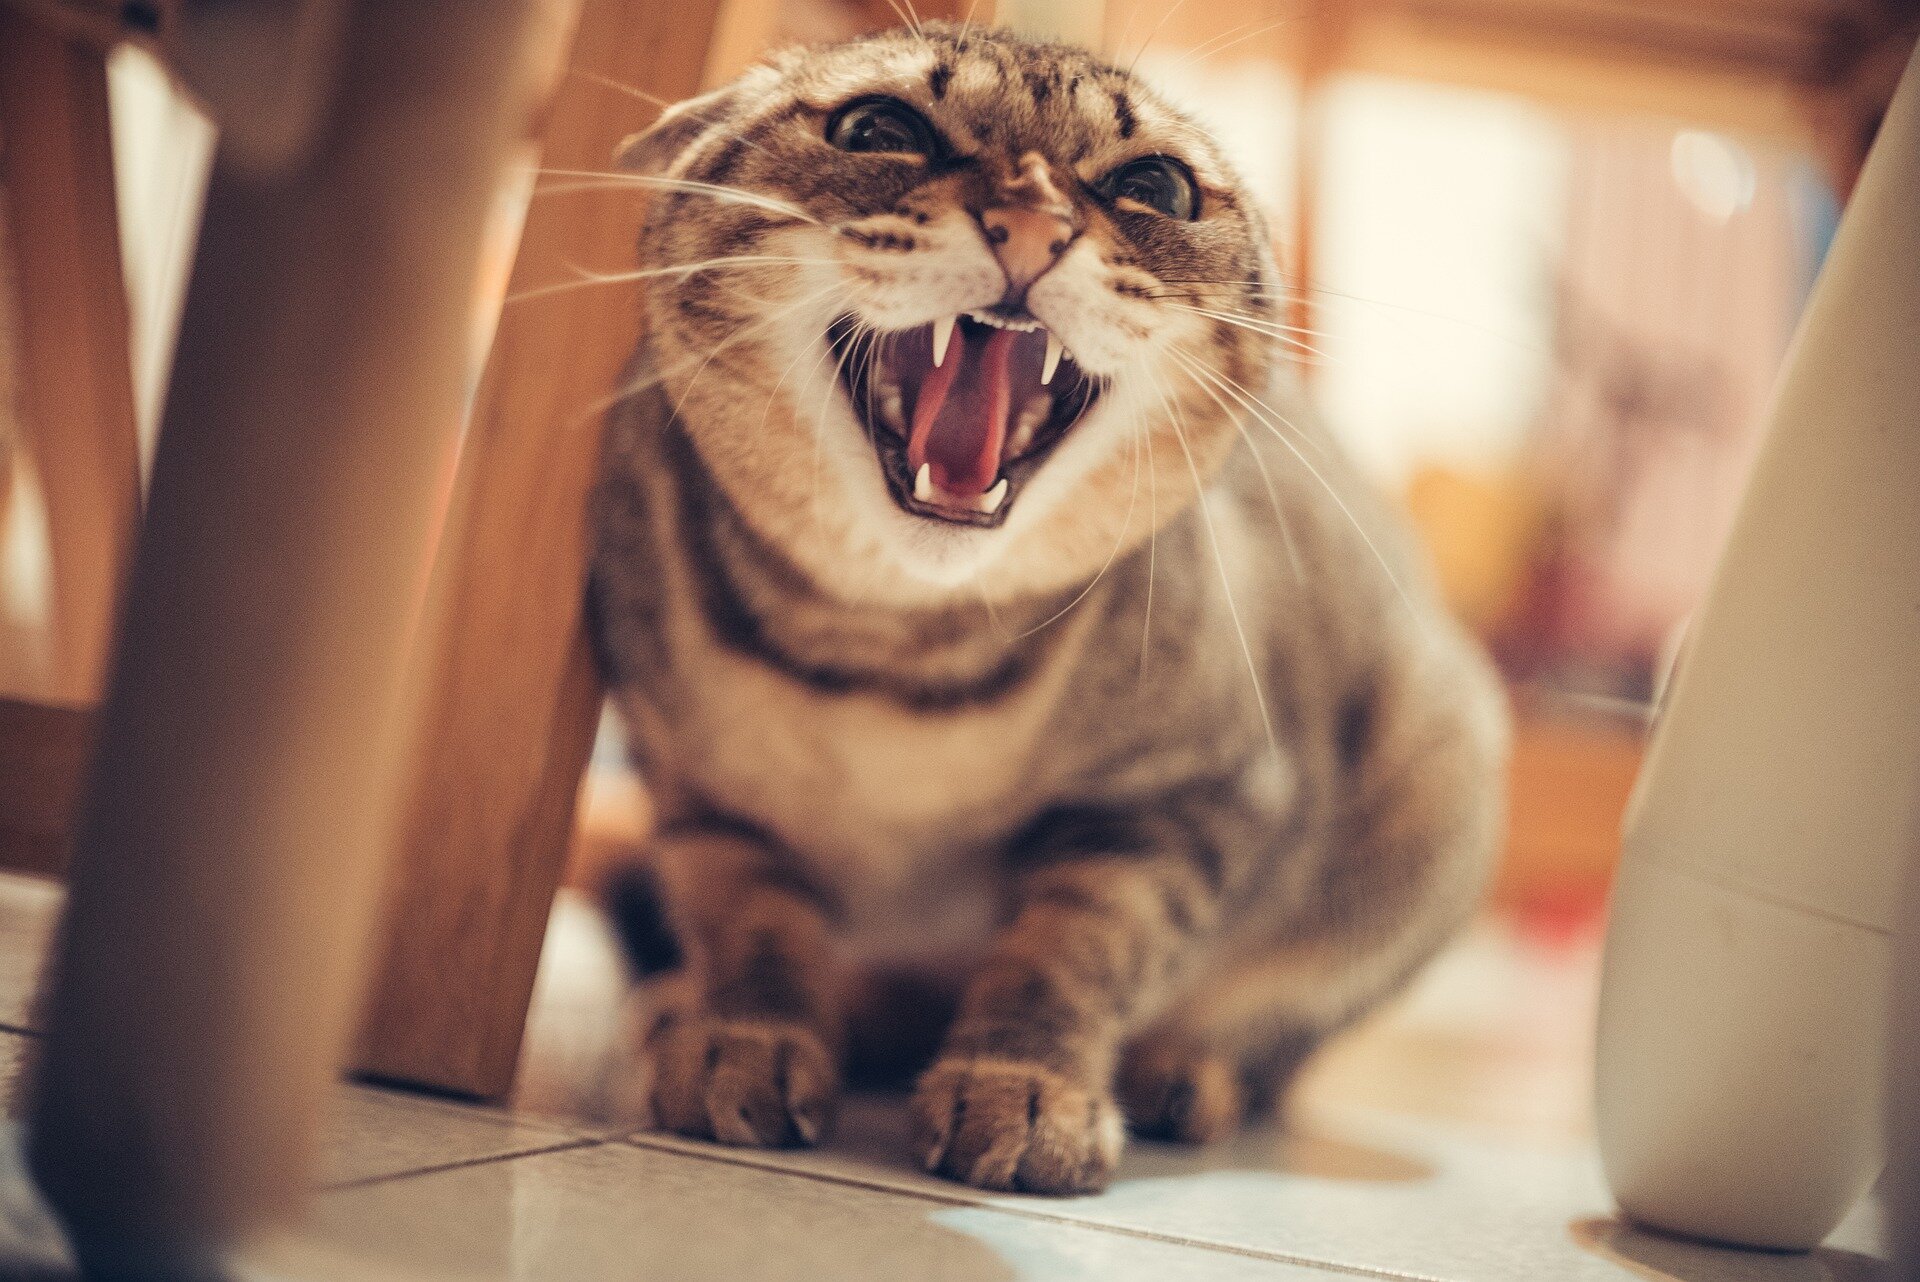 kızgın tıslayan kedi